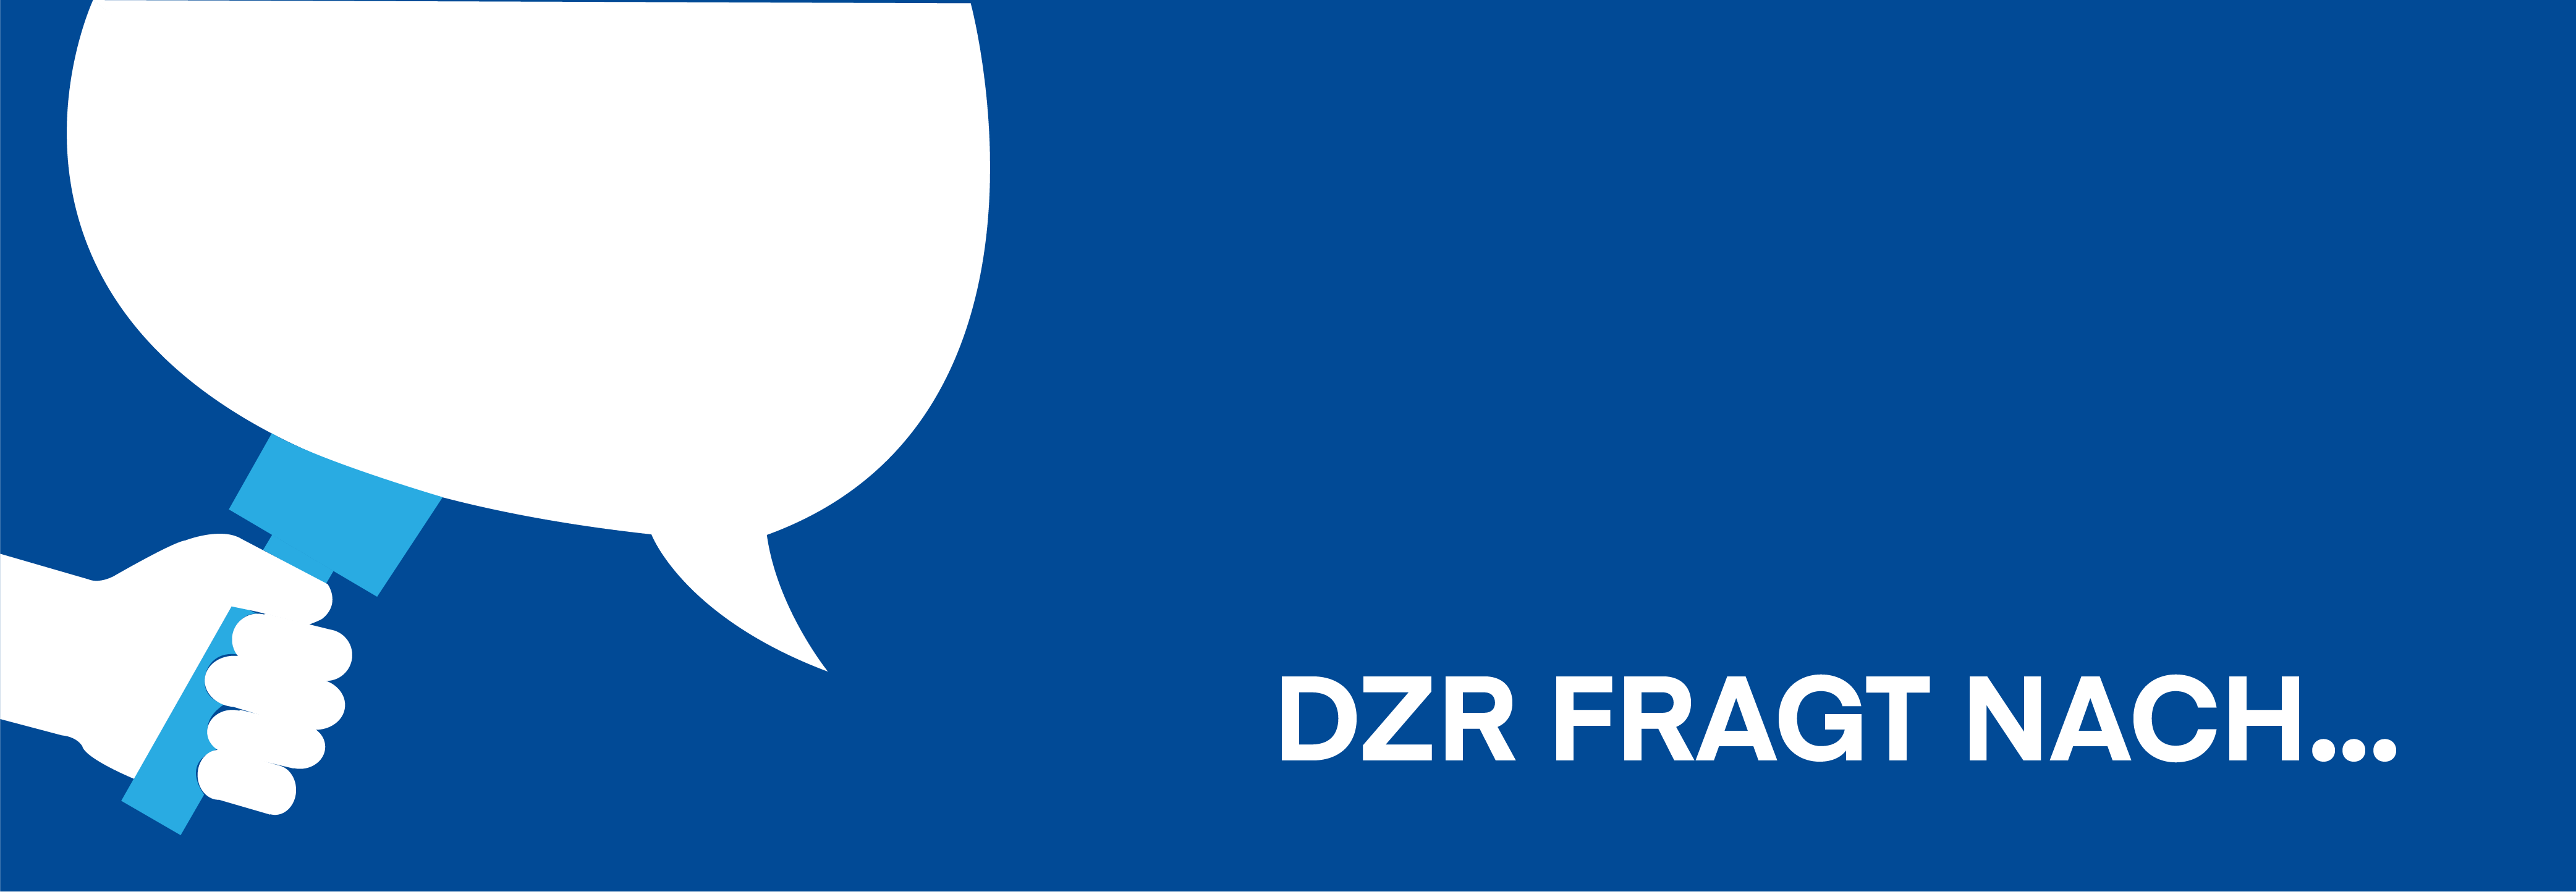 Blaue Grafik mit Aufschrift DZR fragt nacht